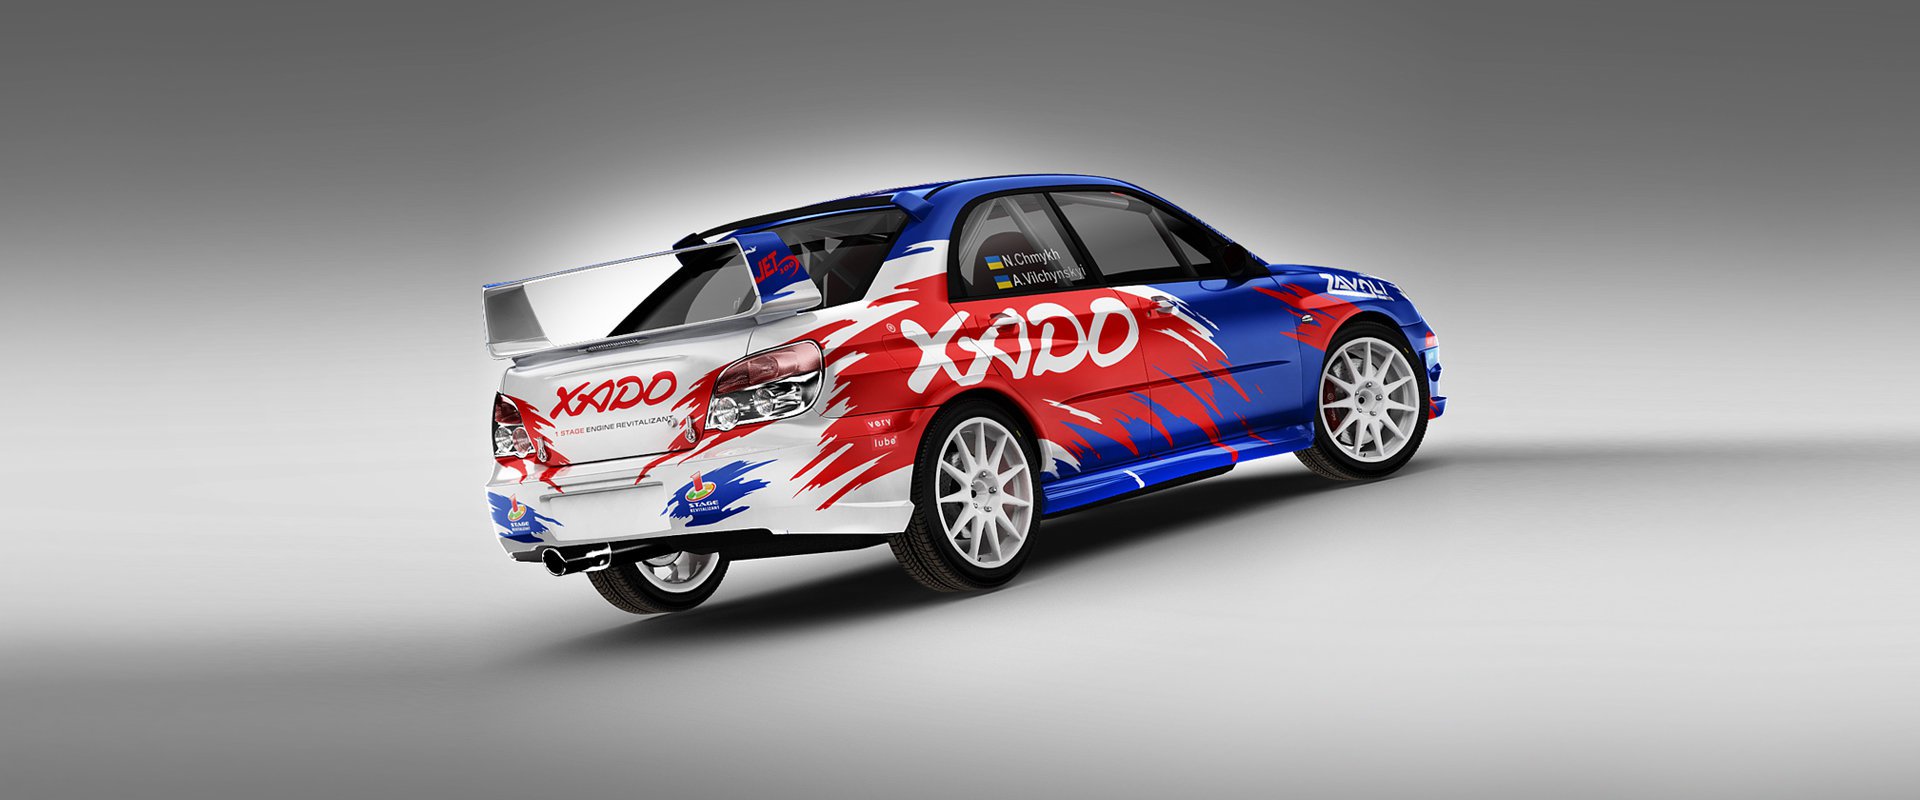 Xado Rally Team #3